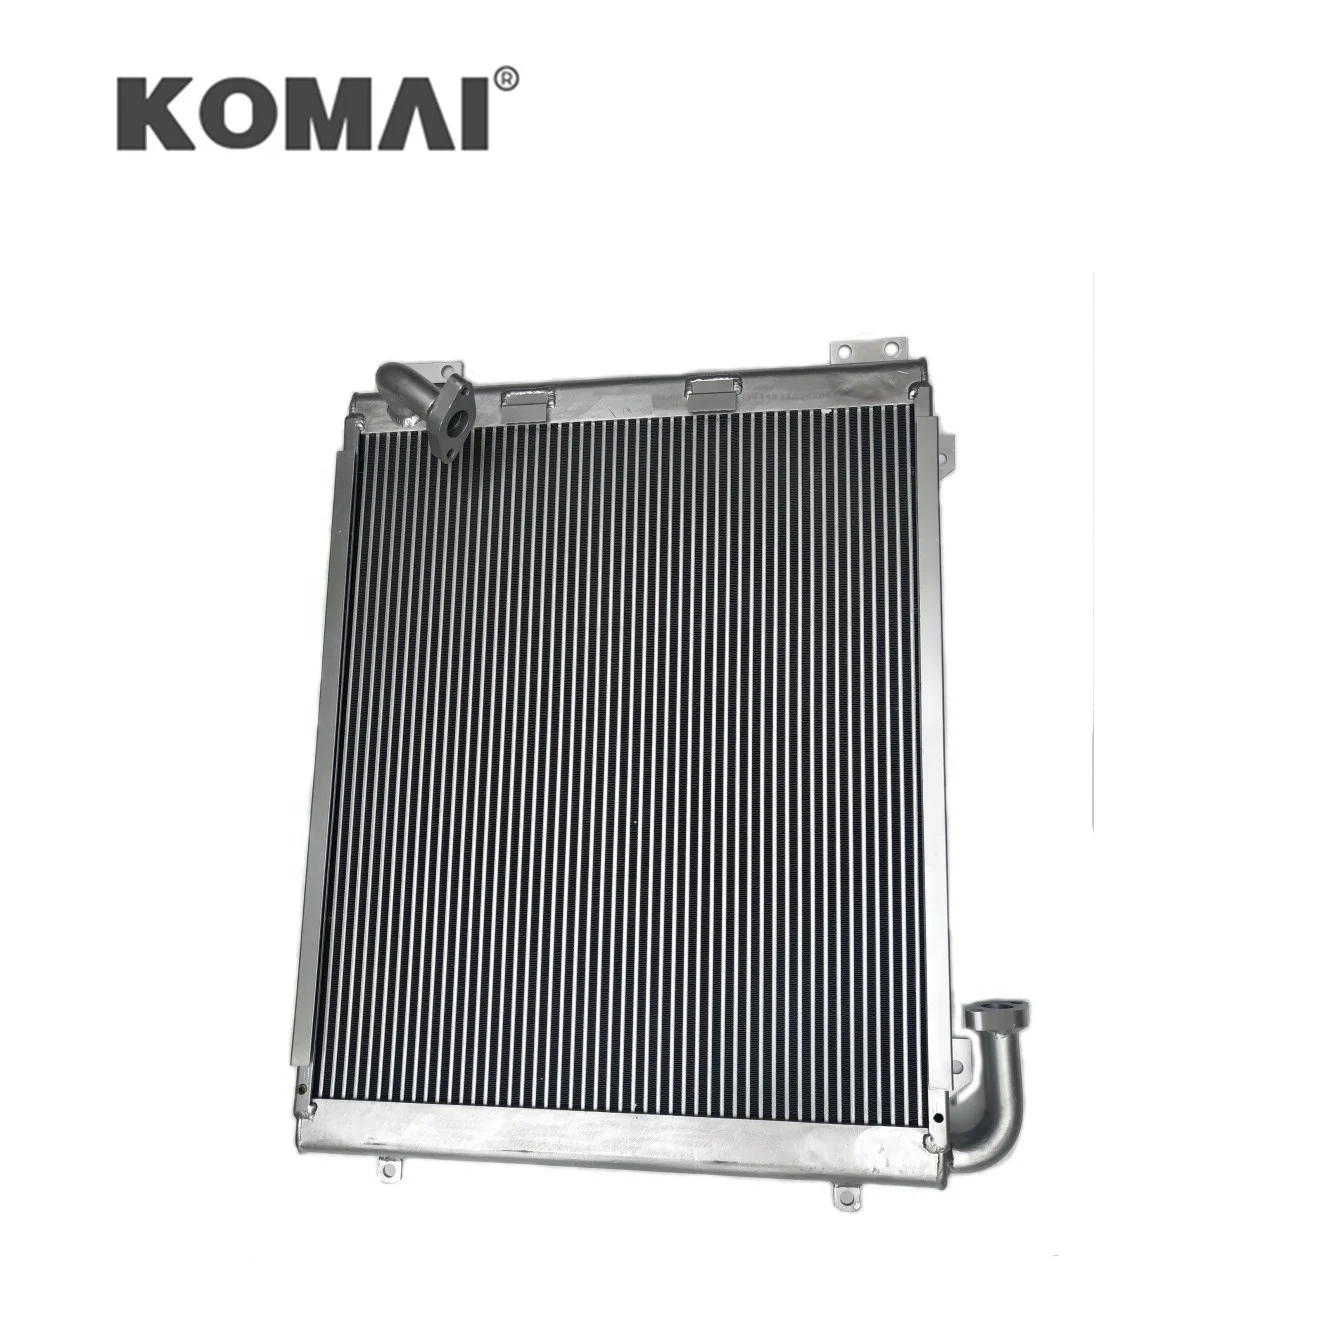 

Детали для экскаватора, алюминиевый Гидравлический масляный радиатор 20Y-03-21121 для Komatsu